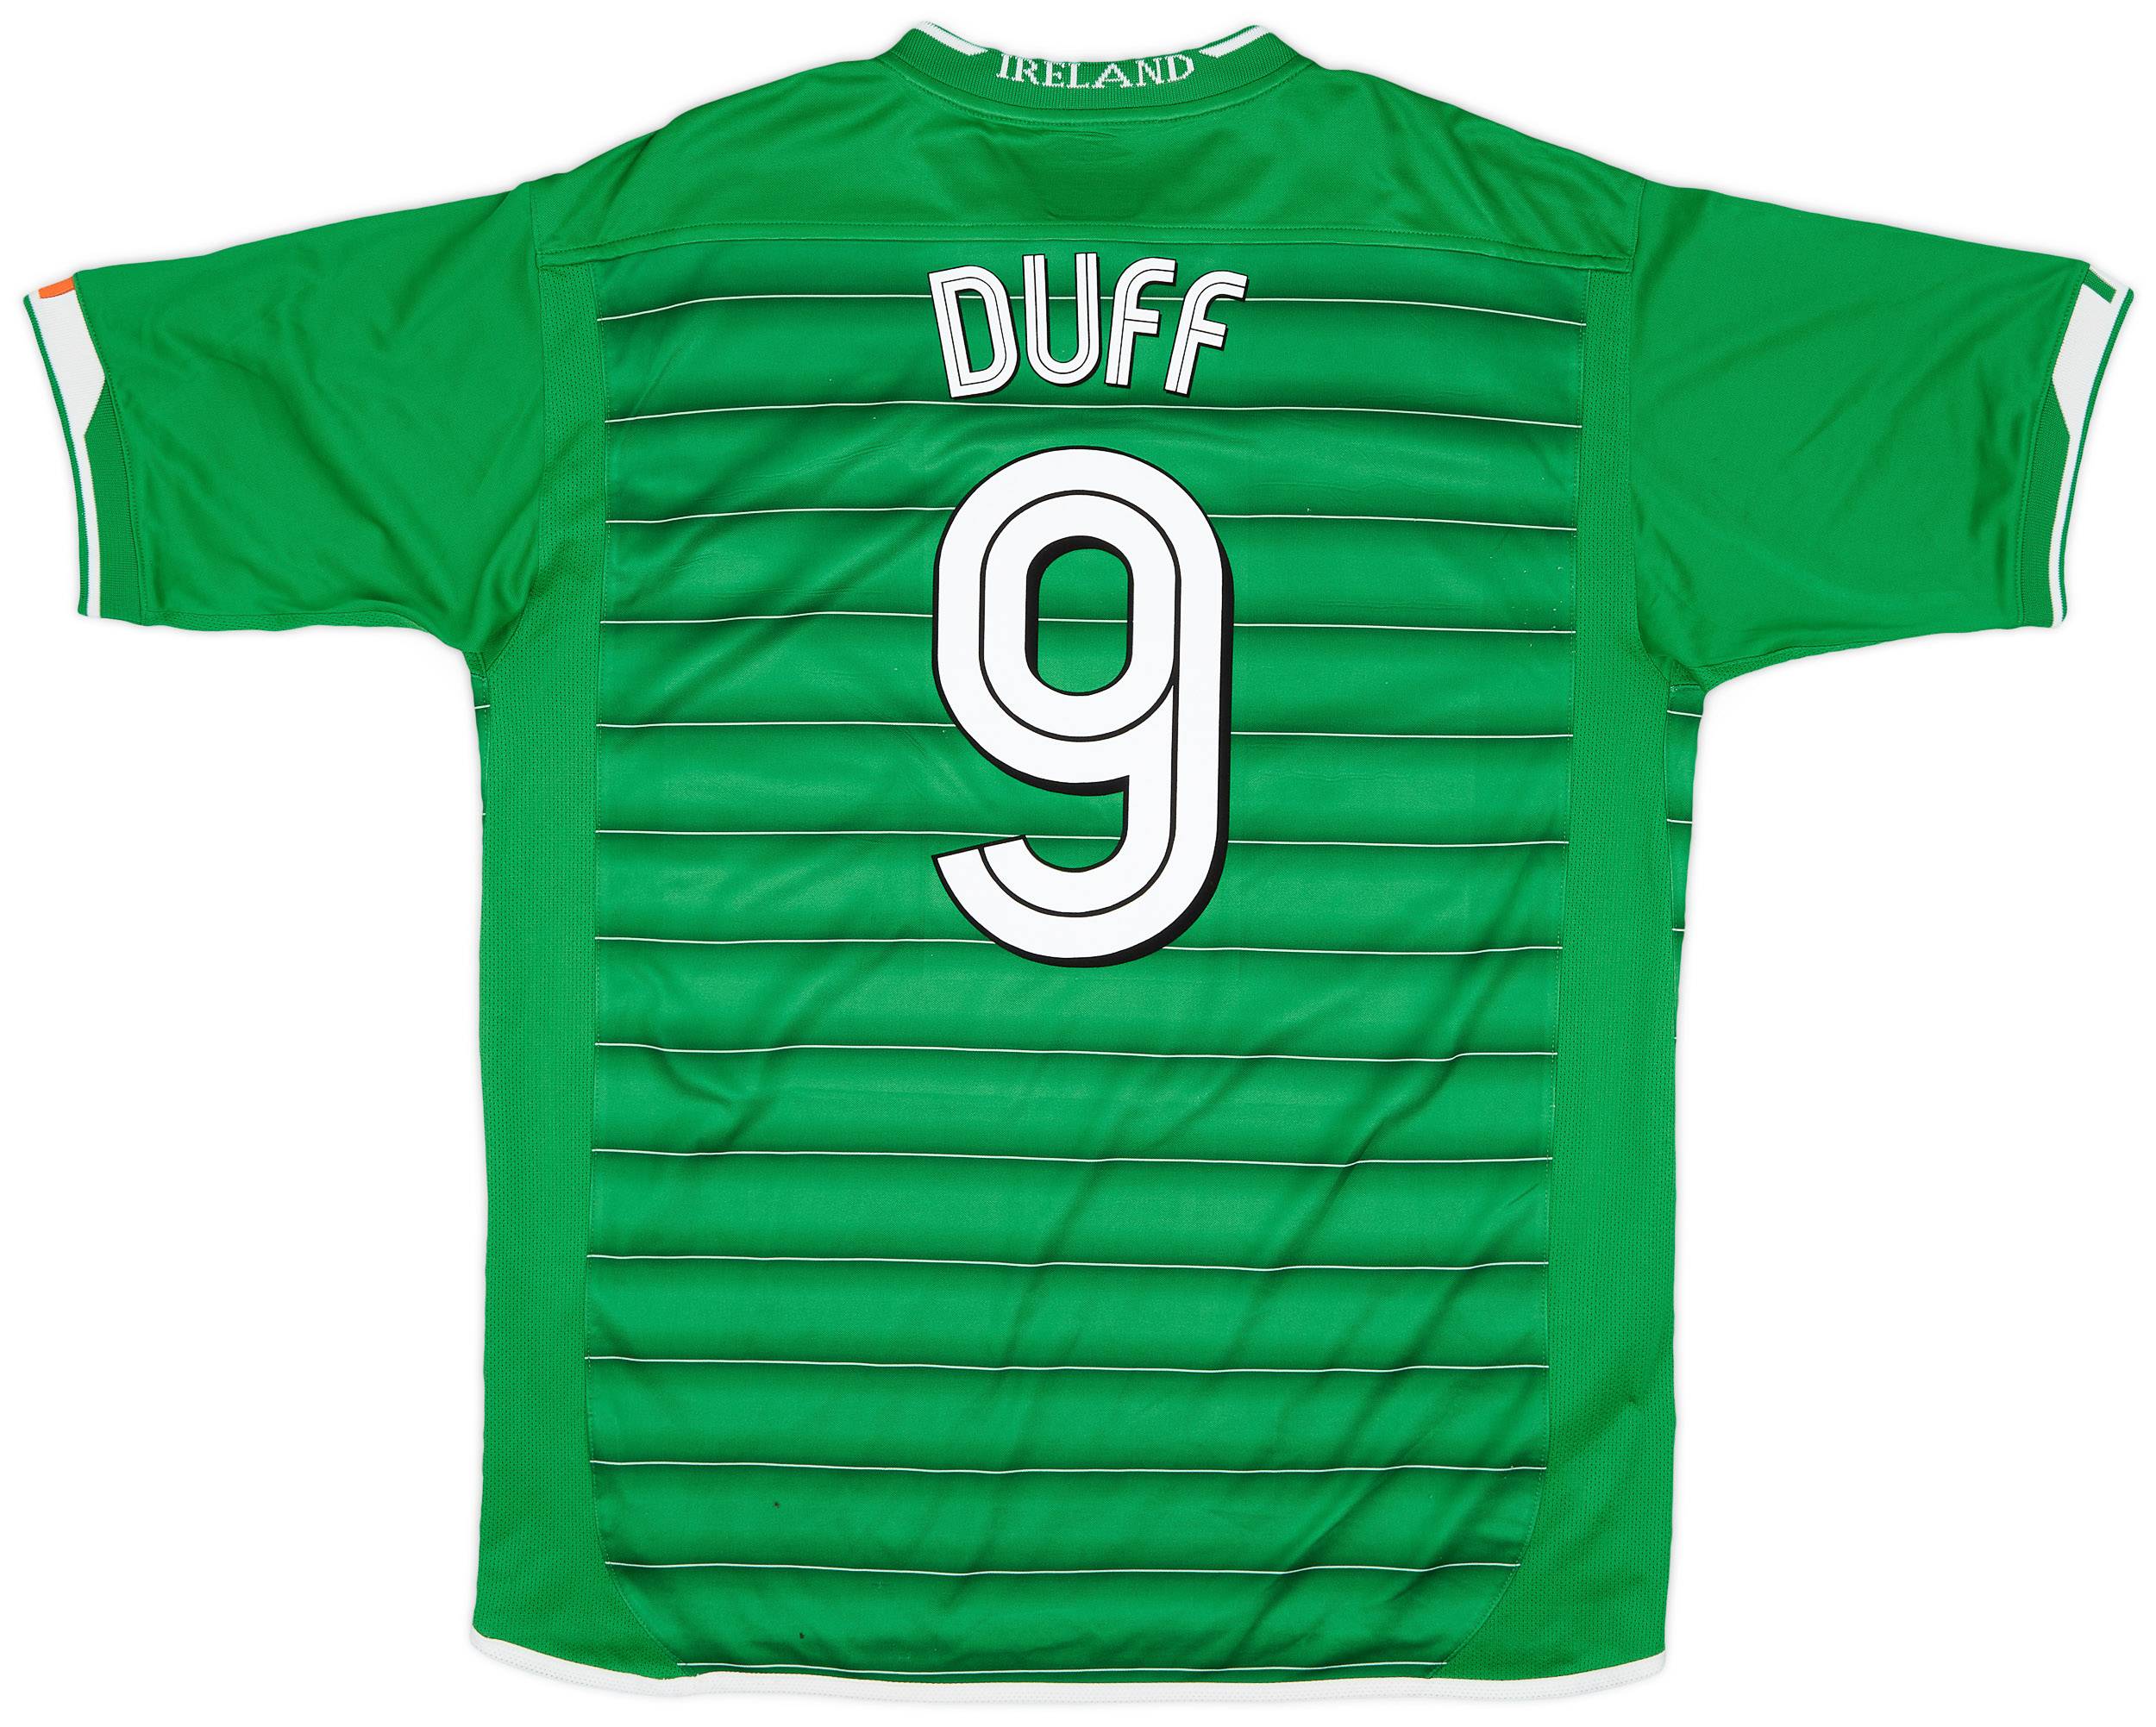 2003-04 Ireland Home Shirt Duff #9 - 8/10 - (XL)